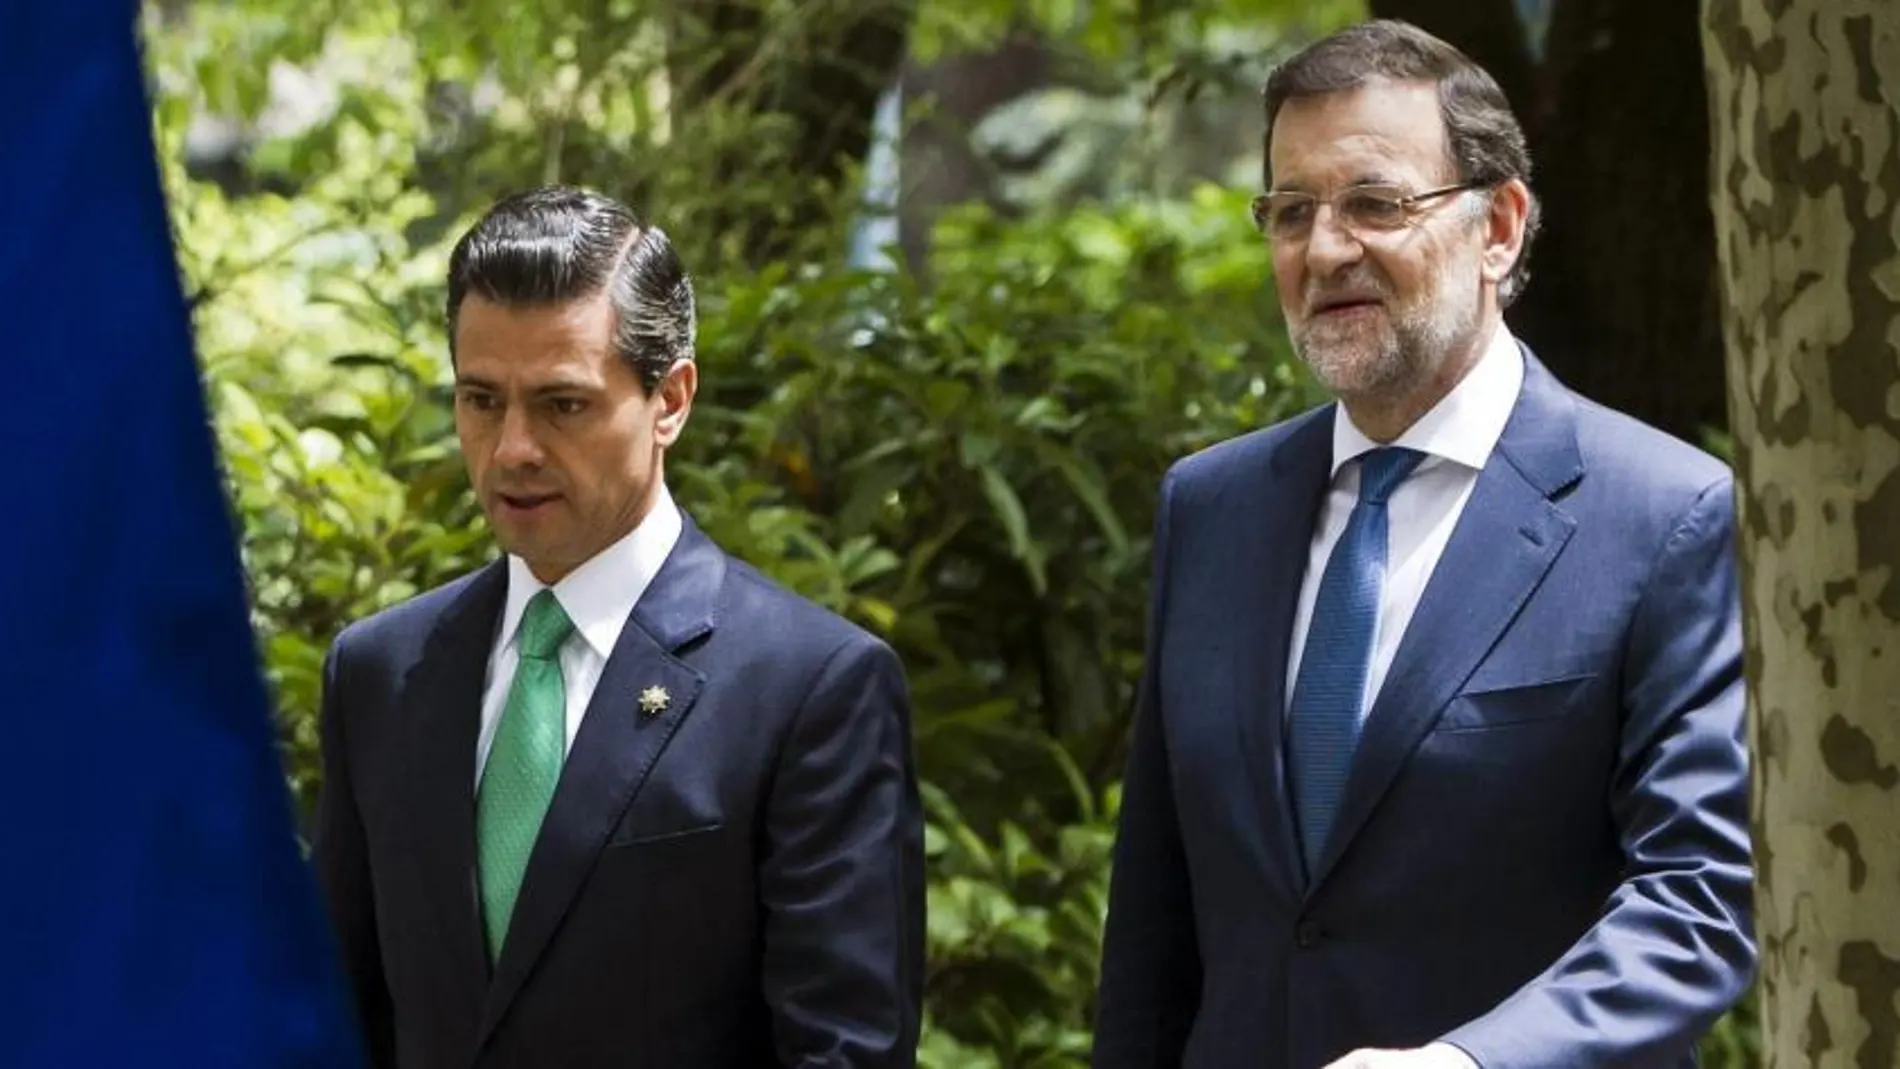 Mariano Rajoy y Enrique Peña Nieto en la rueda de prensa en La Moncloa